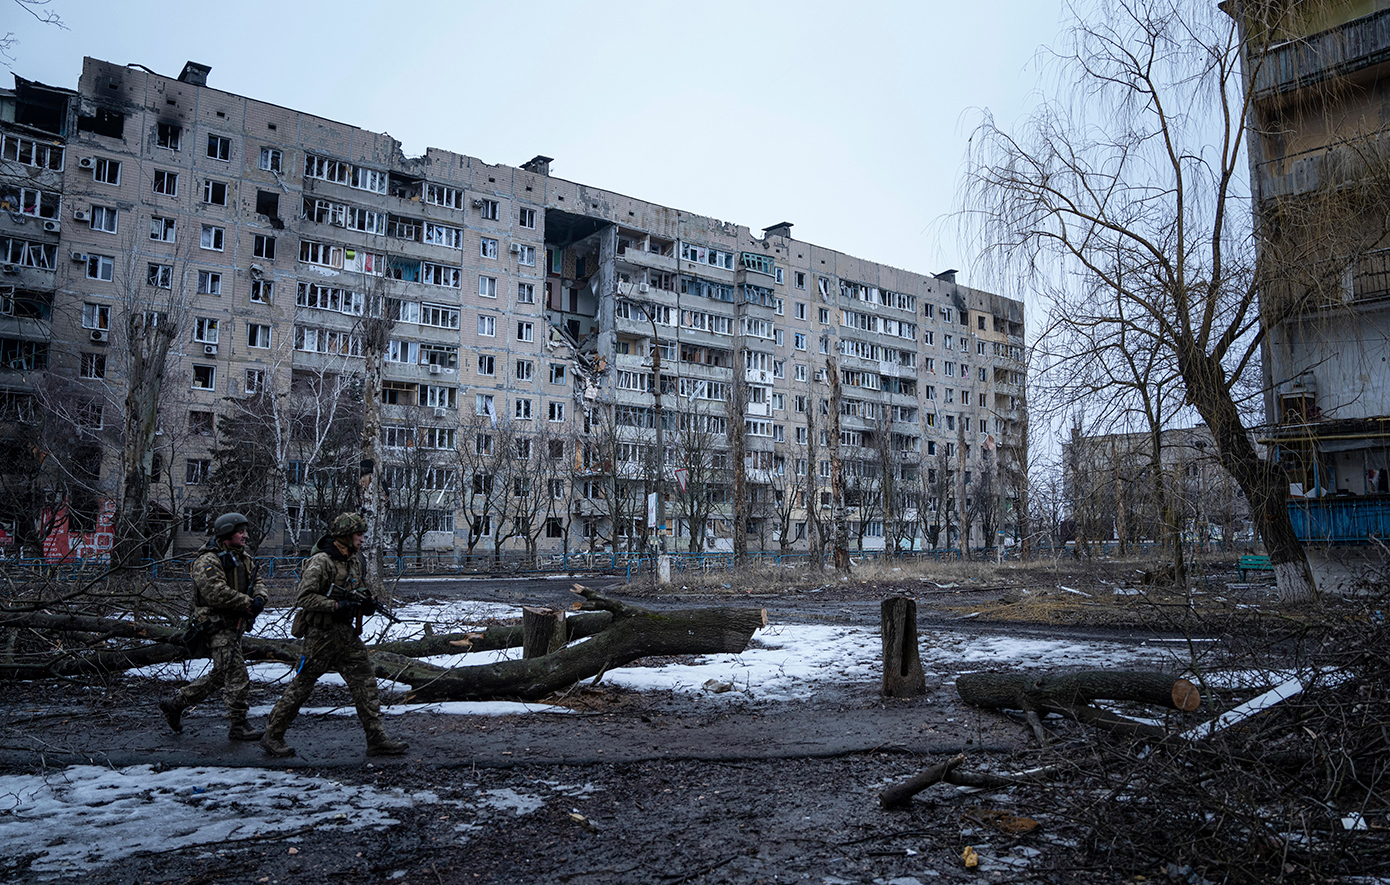 Η Ρωσία καταλαμβάνει θέσεις στην ουκρανική πόλη Βοβτσάνσκ, στην περιοχή του Χαρκόβου